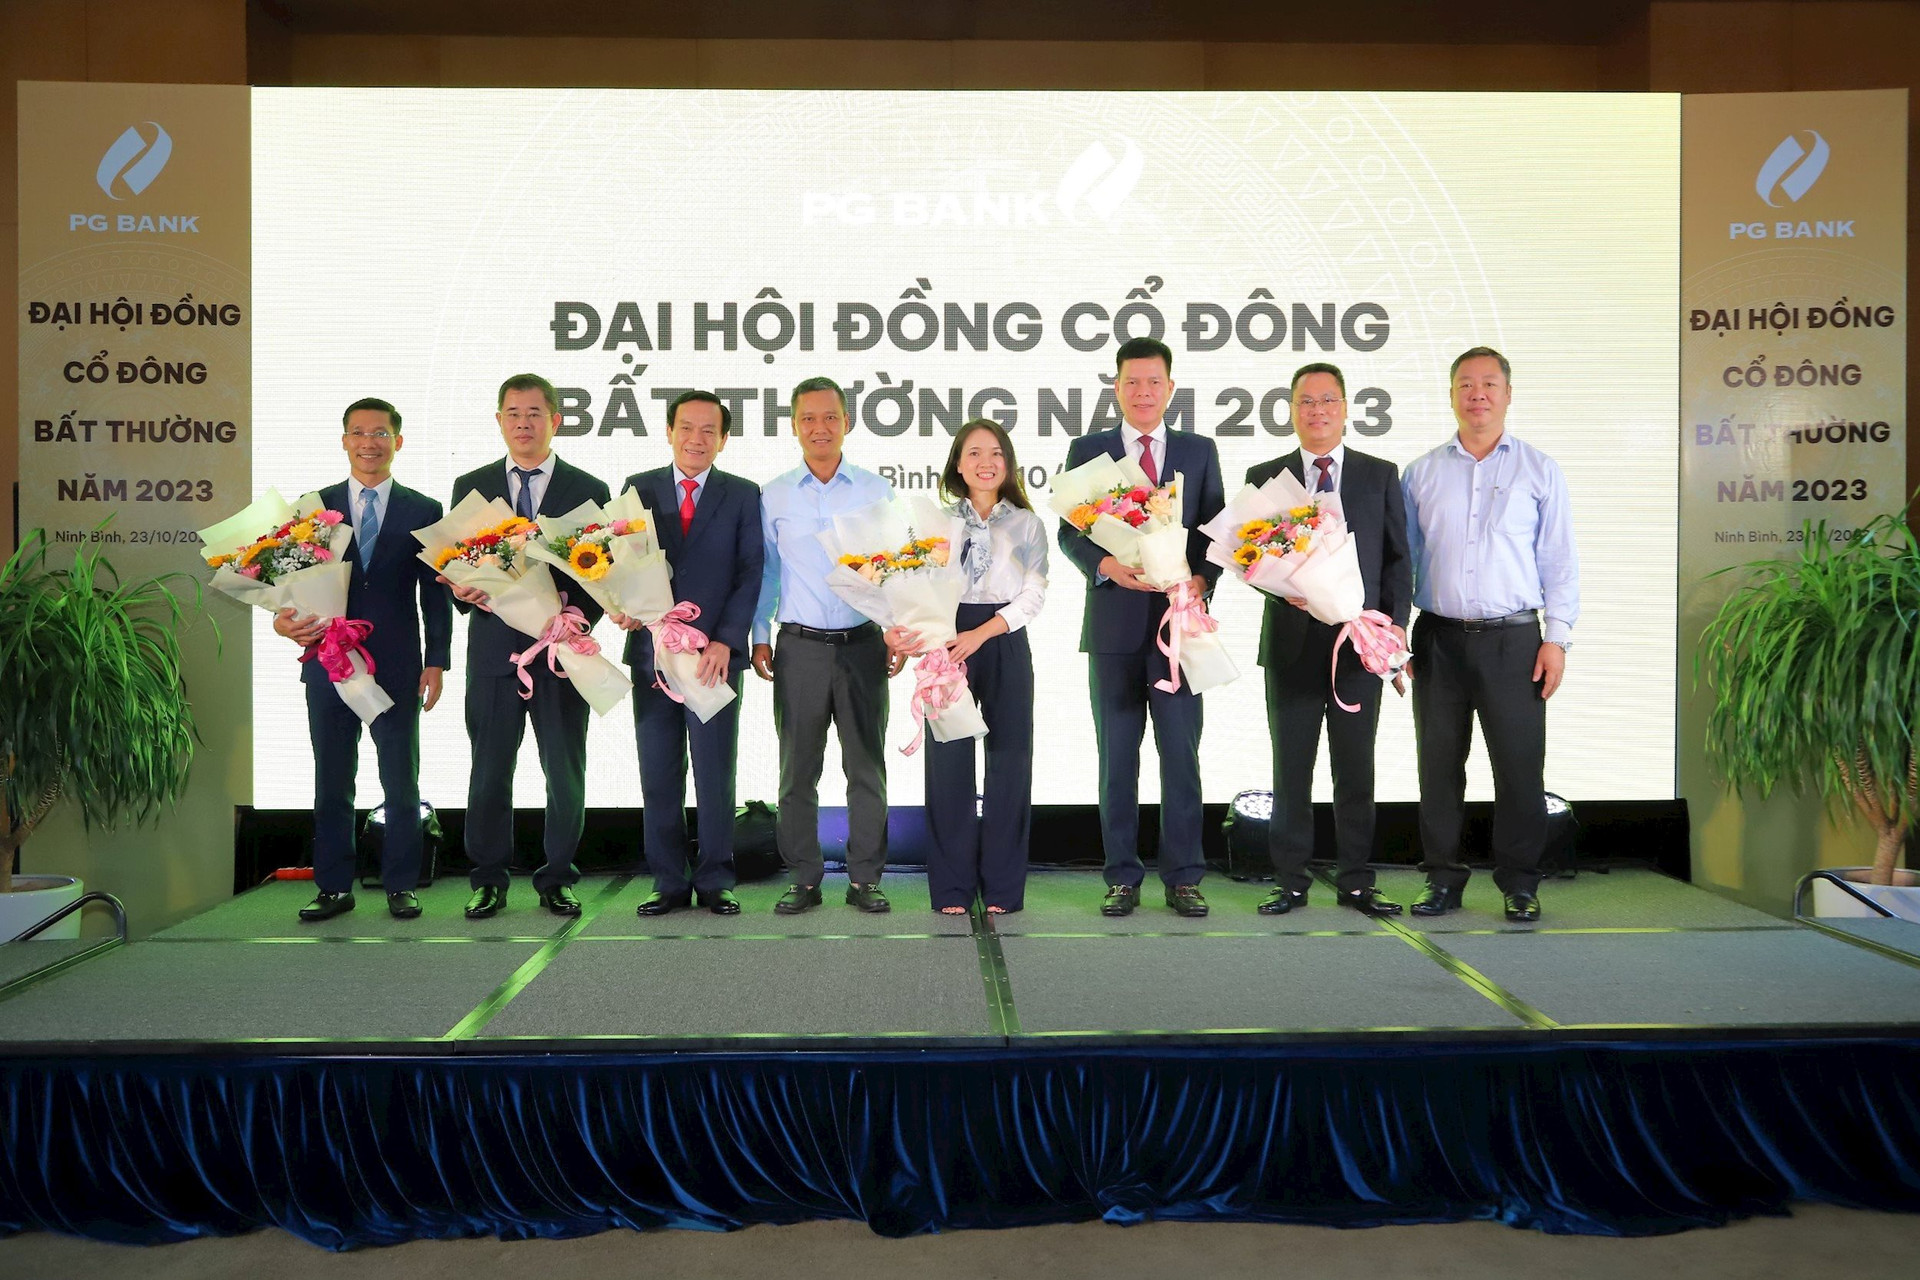 PG Bank tổ chức thành công ĐHCĐ bất thường, ông Phạm Mạnh Thắng được bầu làm chủ tịch HĐQT - Ảnh 1.